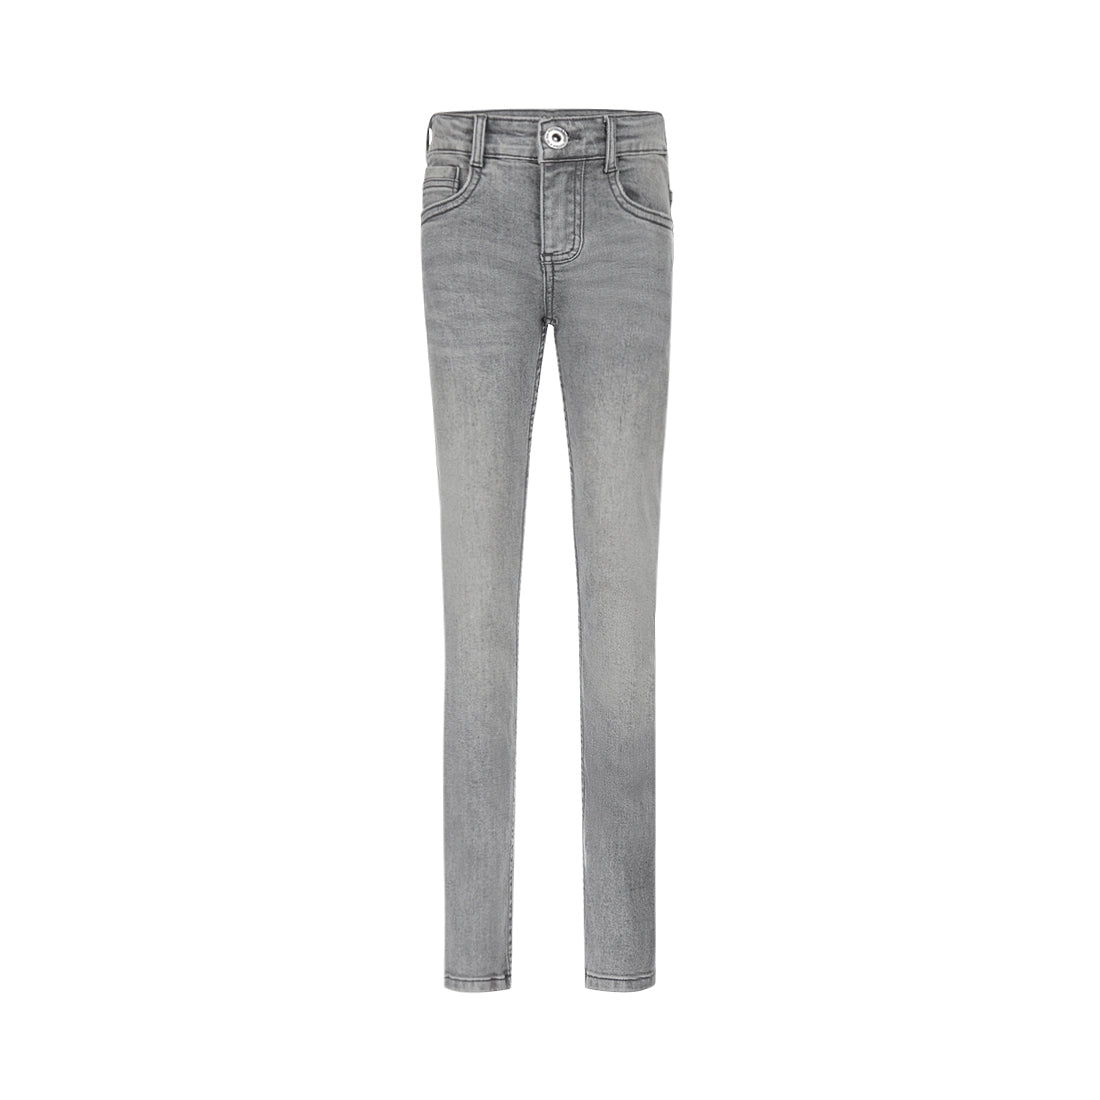 Jongens Jeans Skinny van No Way Monday in de kleur Grey jeans in maat 164.